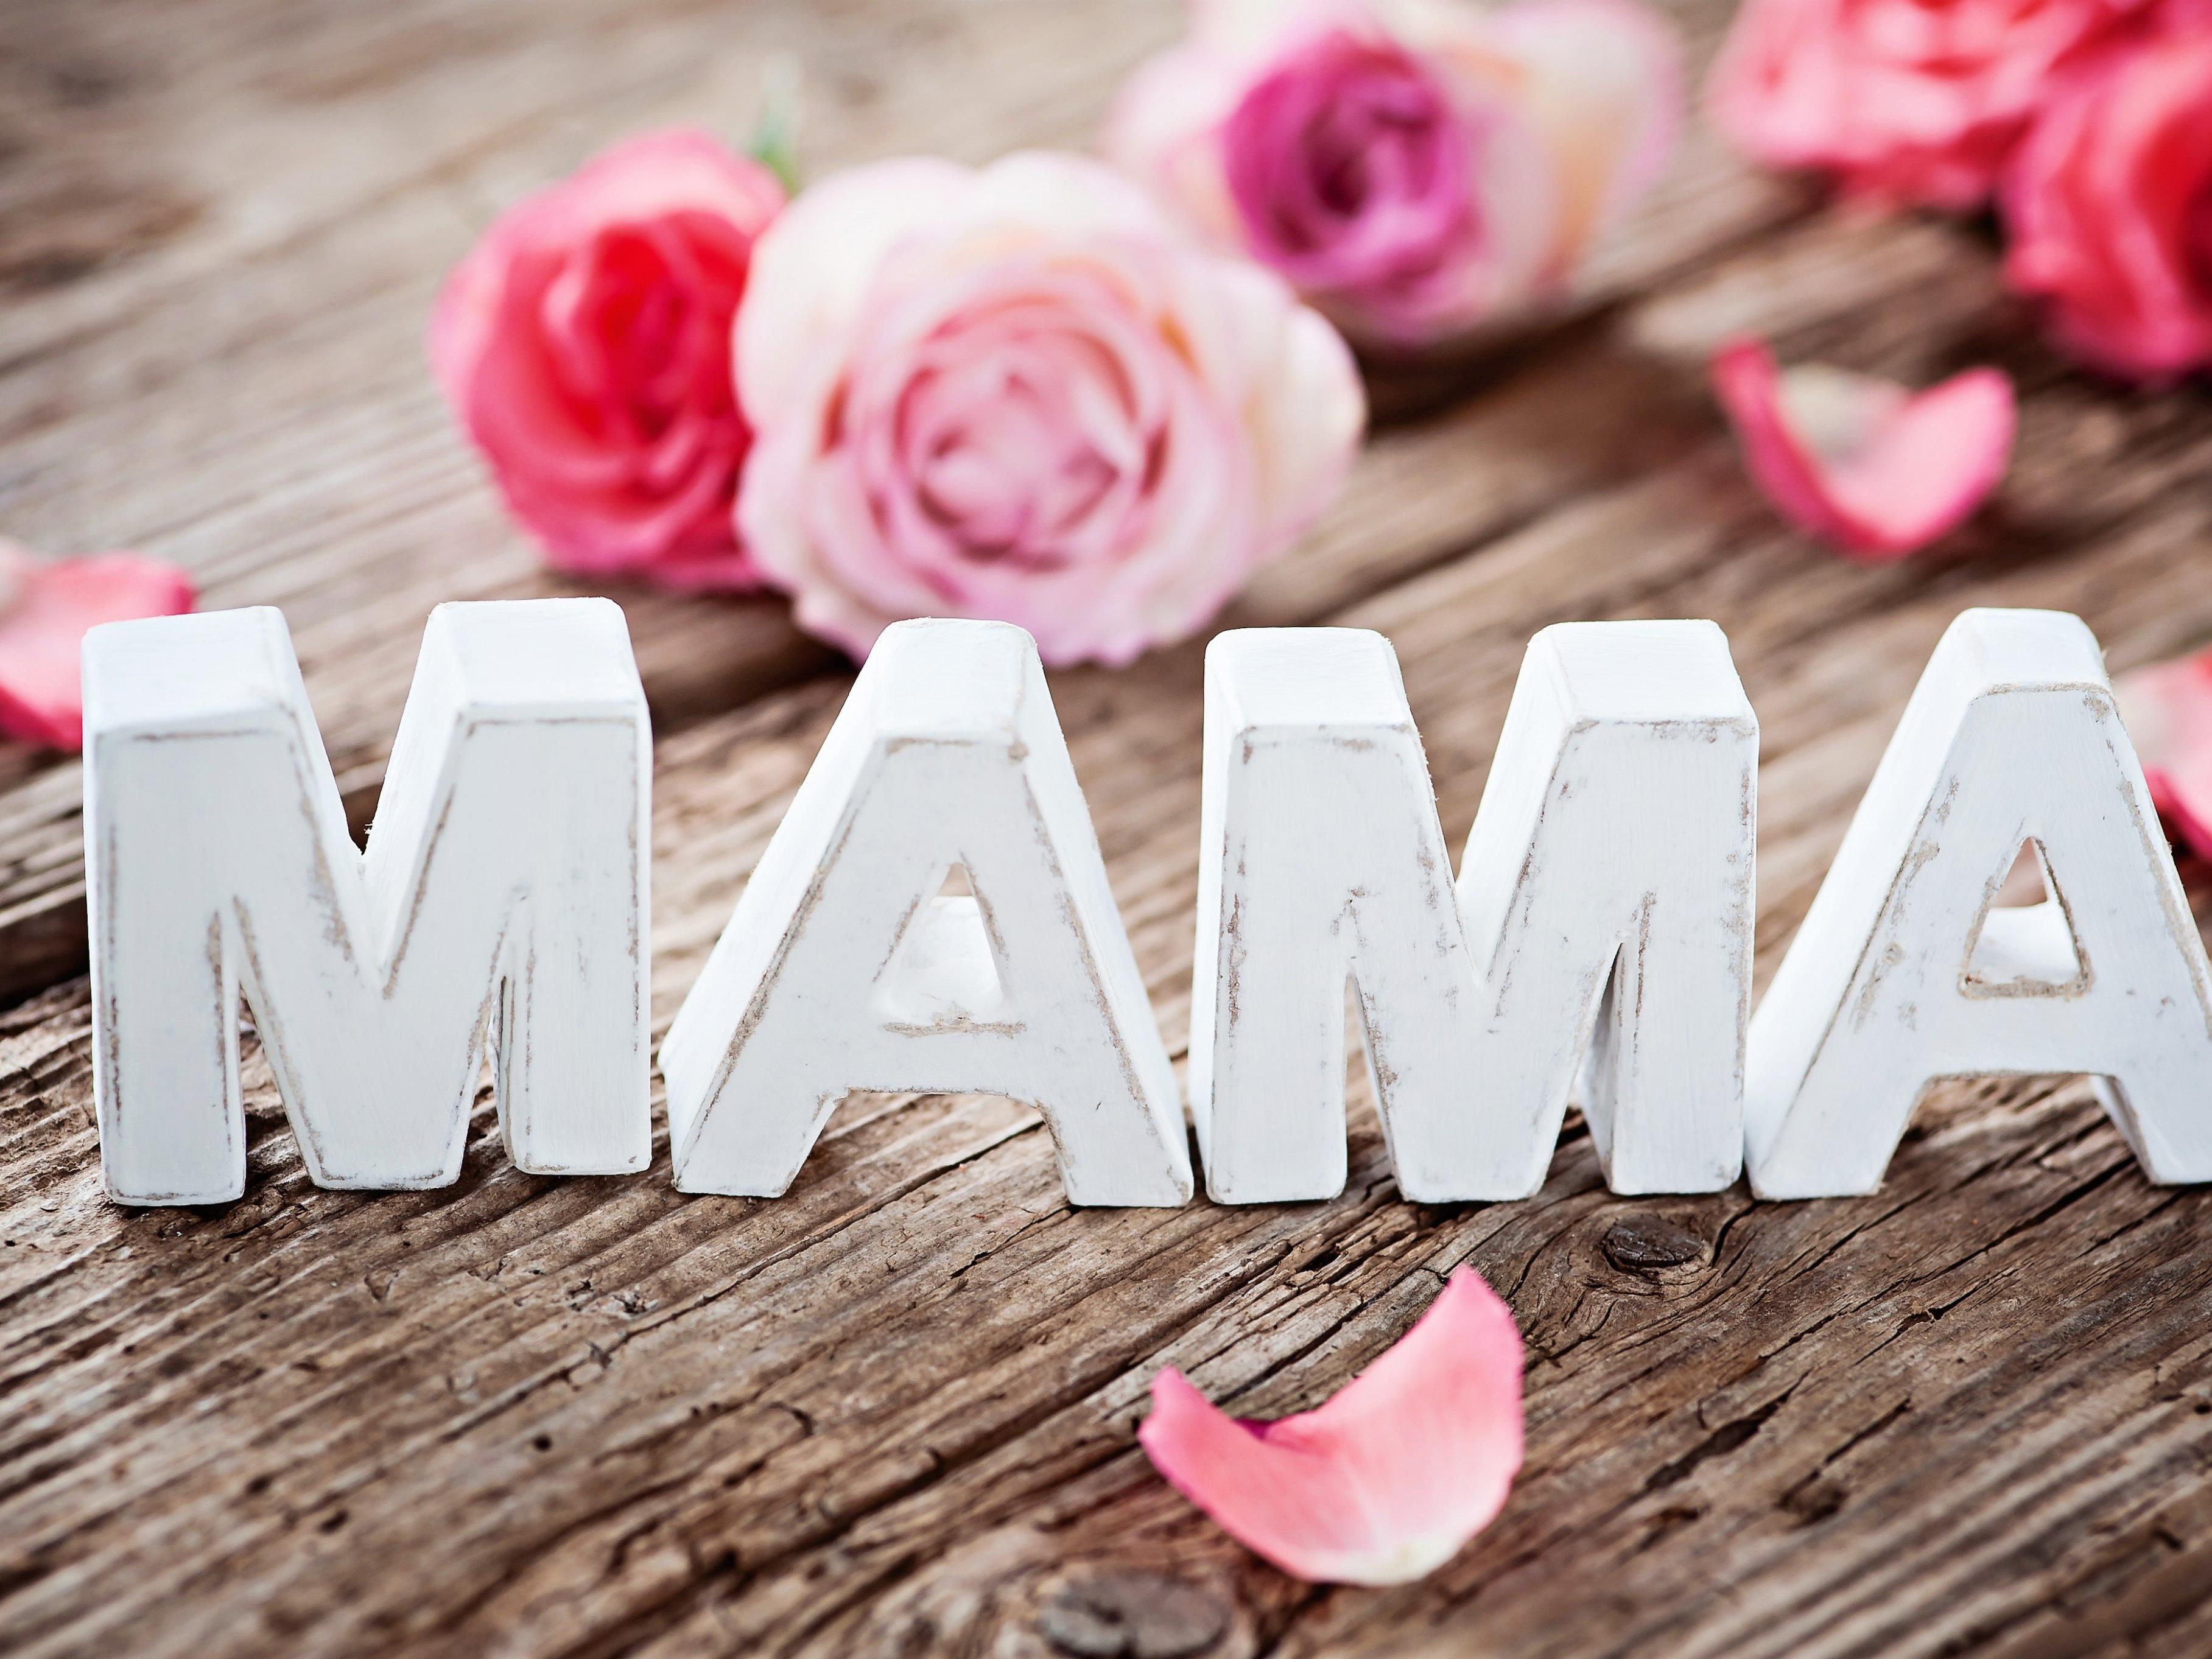 Alles Liebe Zum Muttertag Jetzt Blumenstrauss Fur Deine Mama Gewinnen Gewinnspiel Vol At